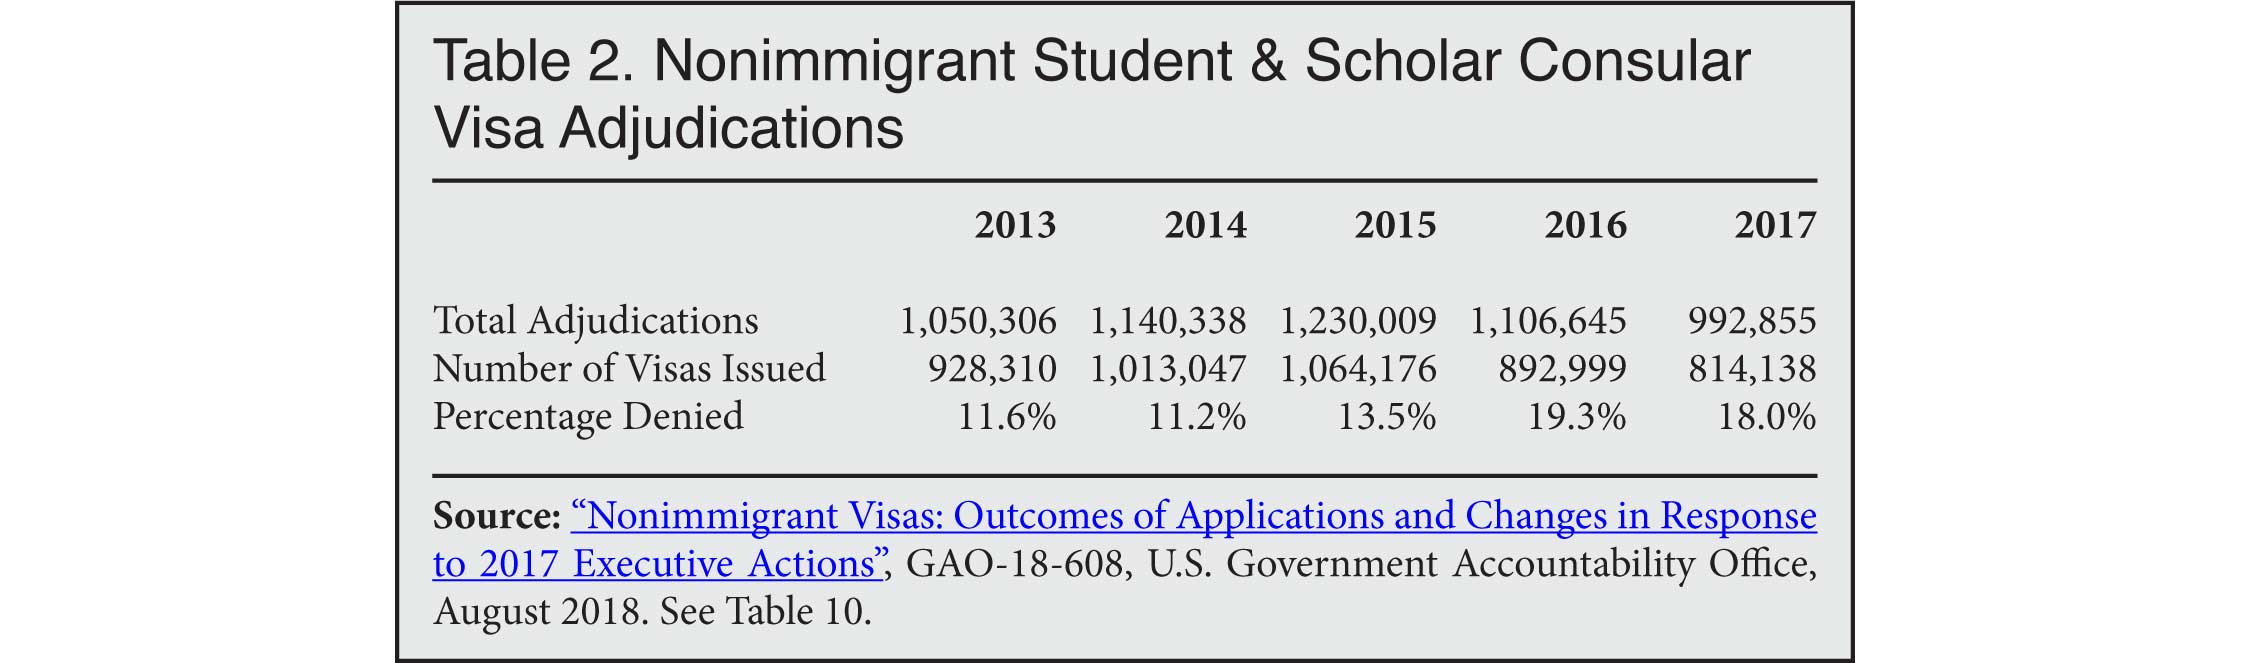 Table: Nonimmigrant Student and Scholar Consular Visa Adjudications